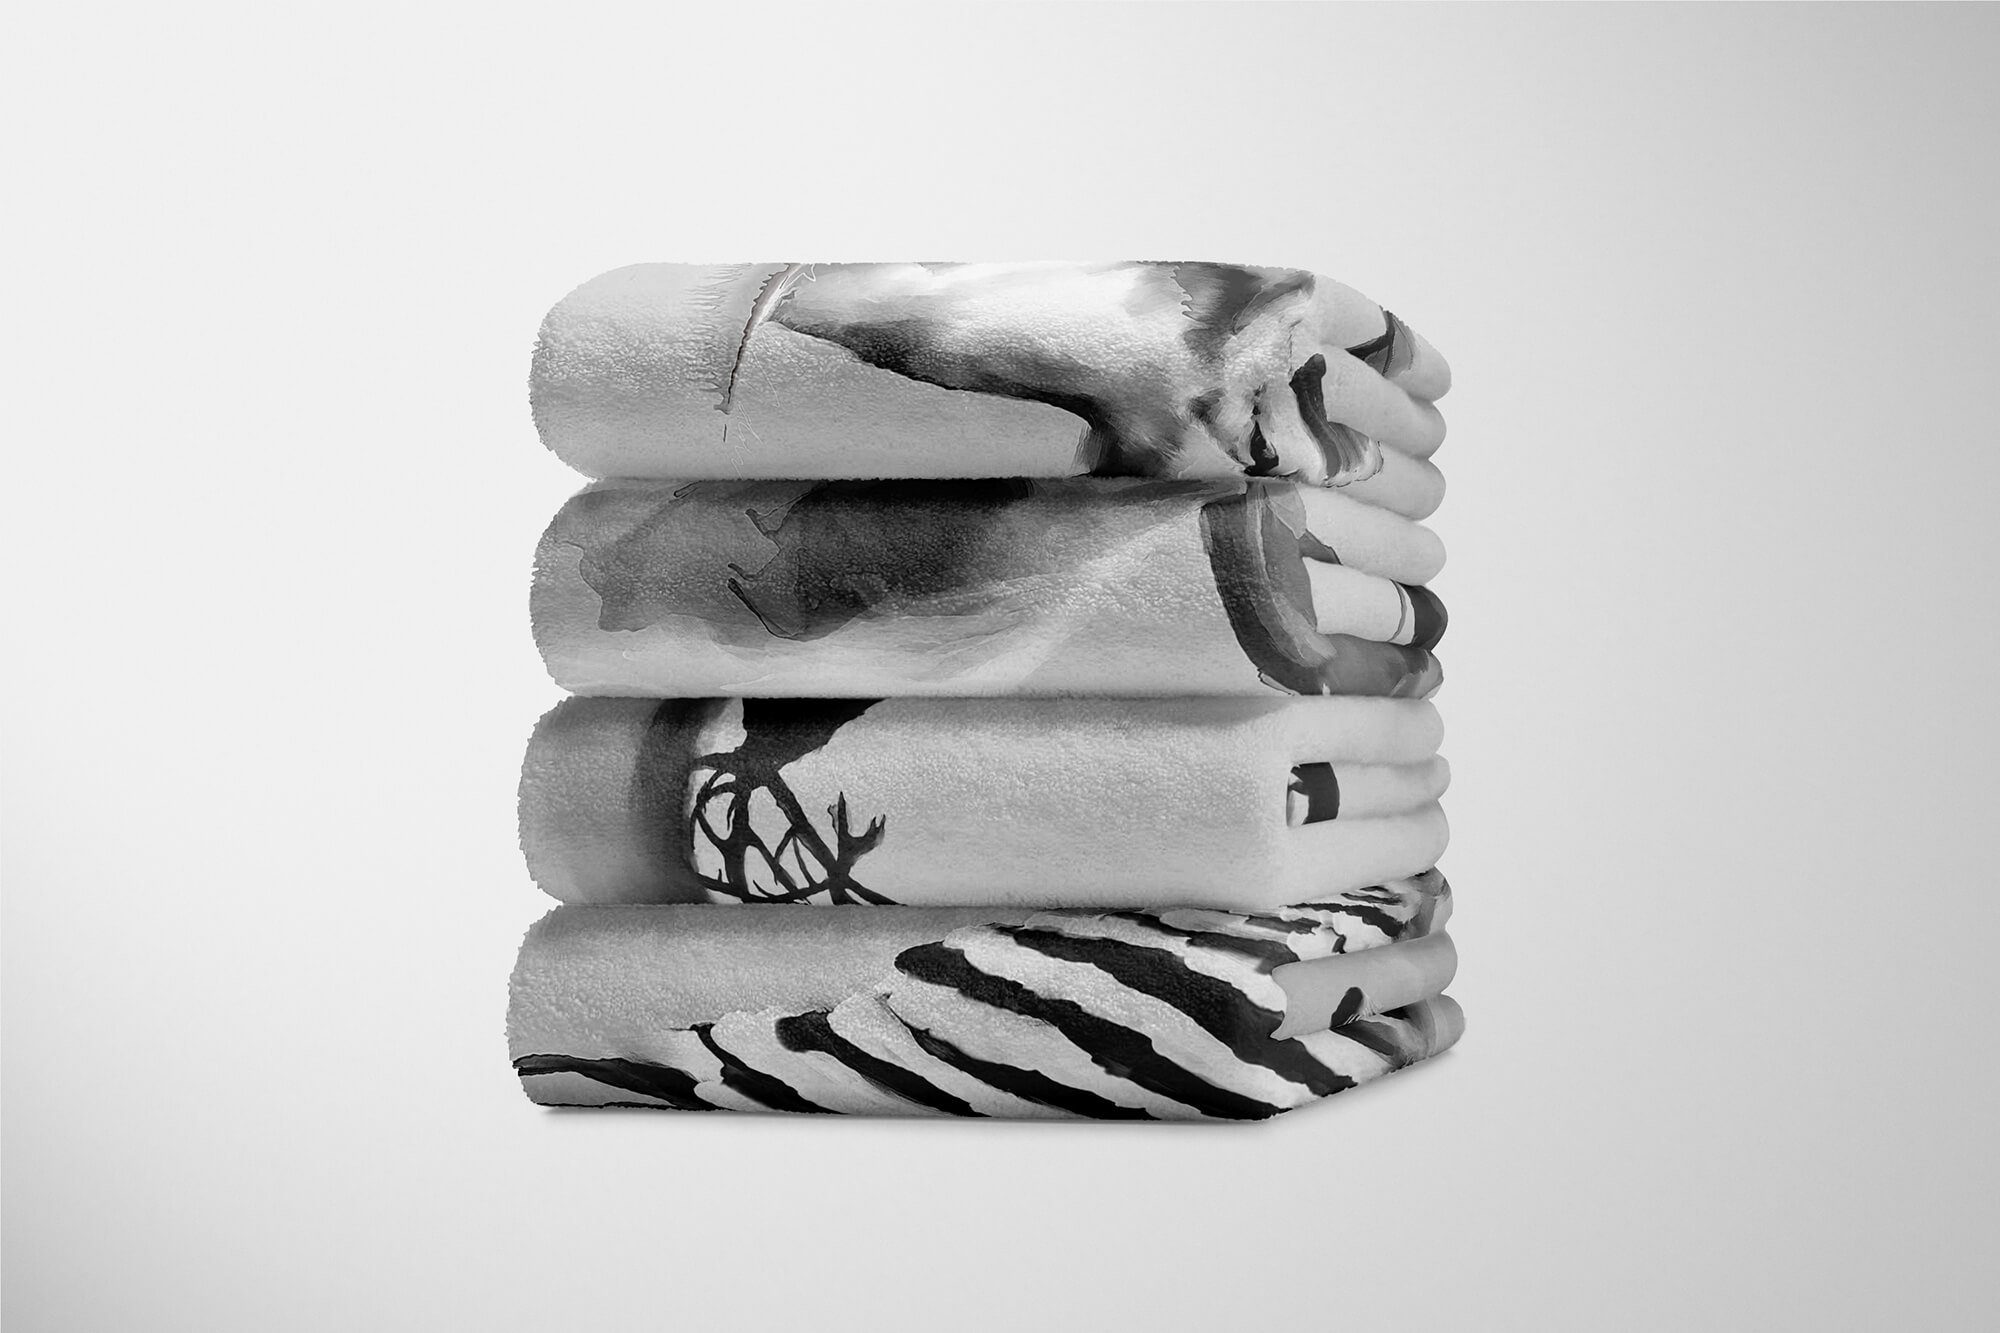 (1-St), Grau Art Kuscheldecke Baumwolle-Polyester-Mix Handtuch Hirsche Motiv, Strandhandtuch Handtücher Handtuch Saunatuch Sinus